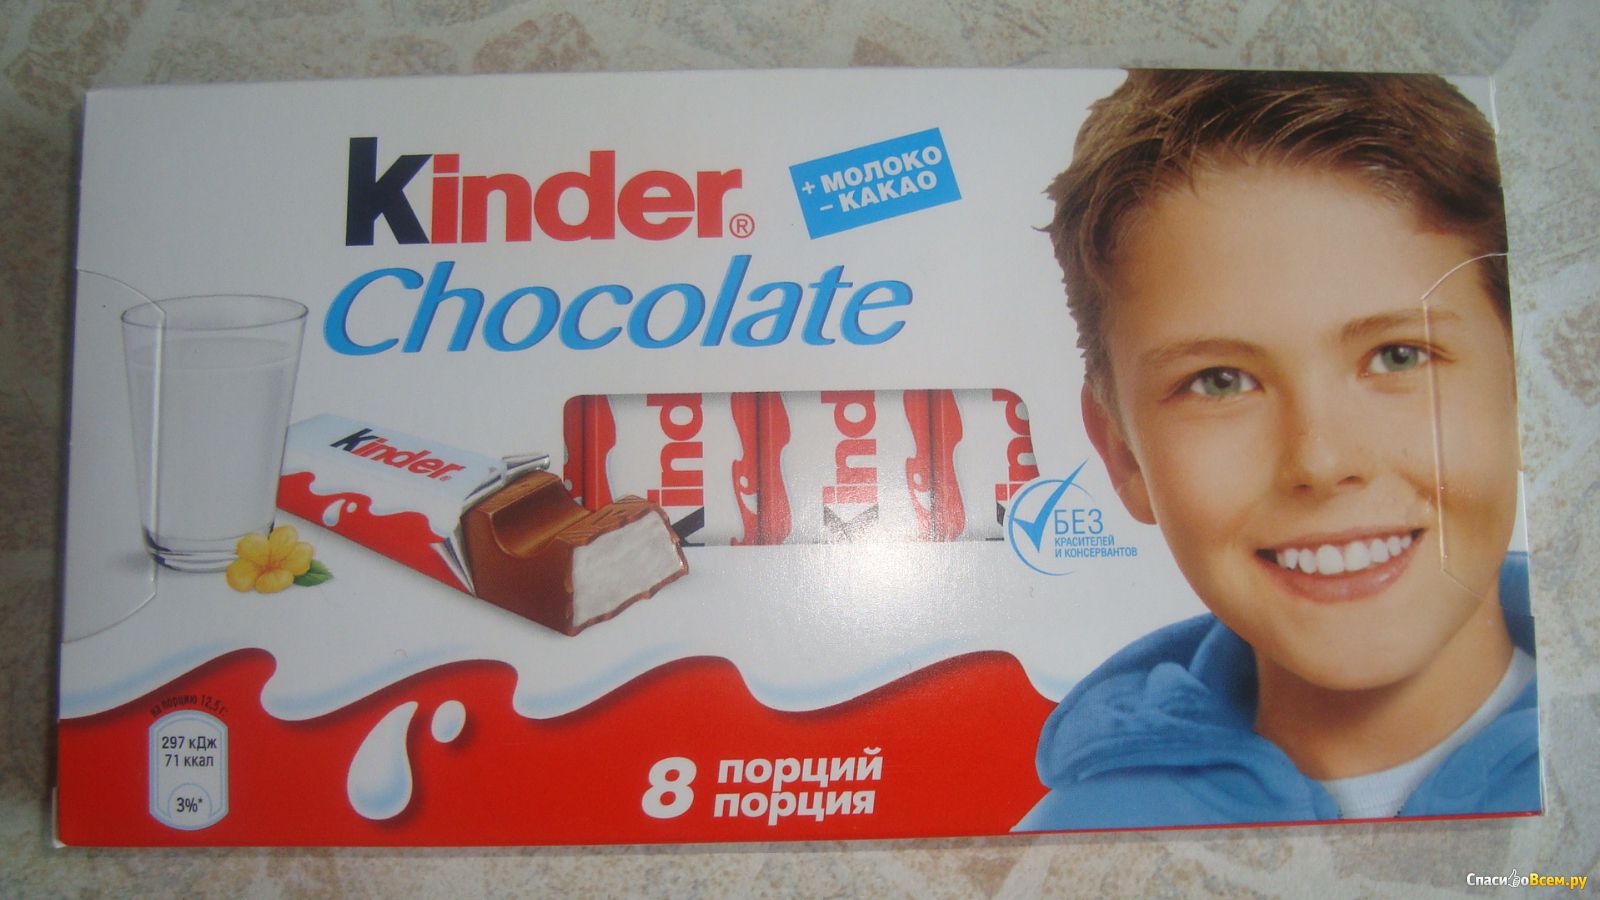 Начинка киндер шоколада. Киндер шоколад. Шоколадка Киндер. Kinder шоколад. Шоколад Киндер с молочной начинкой.